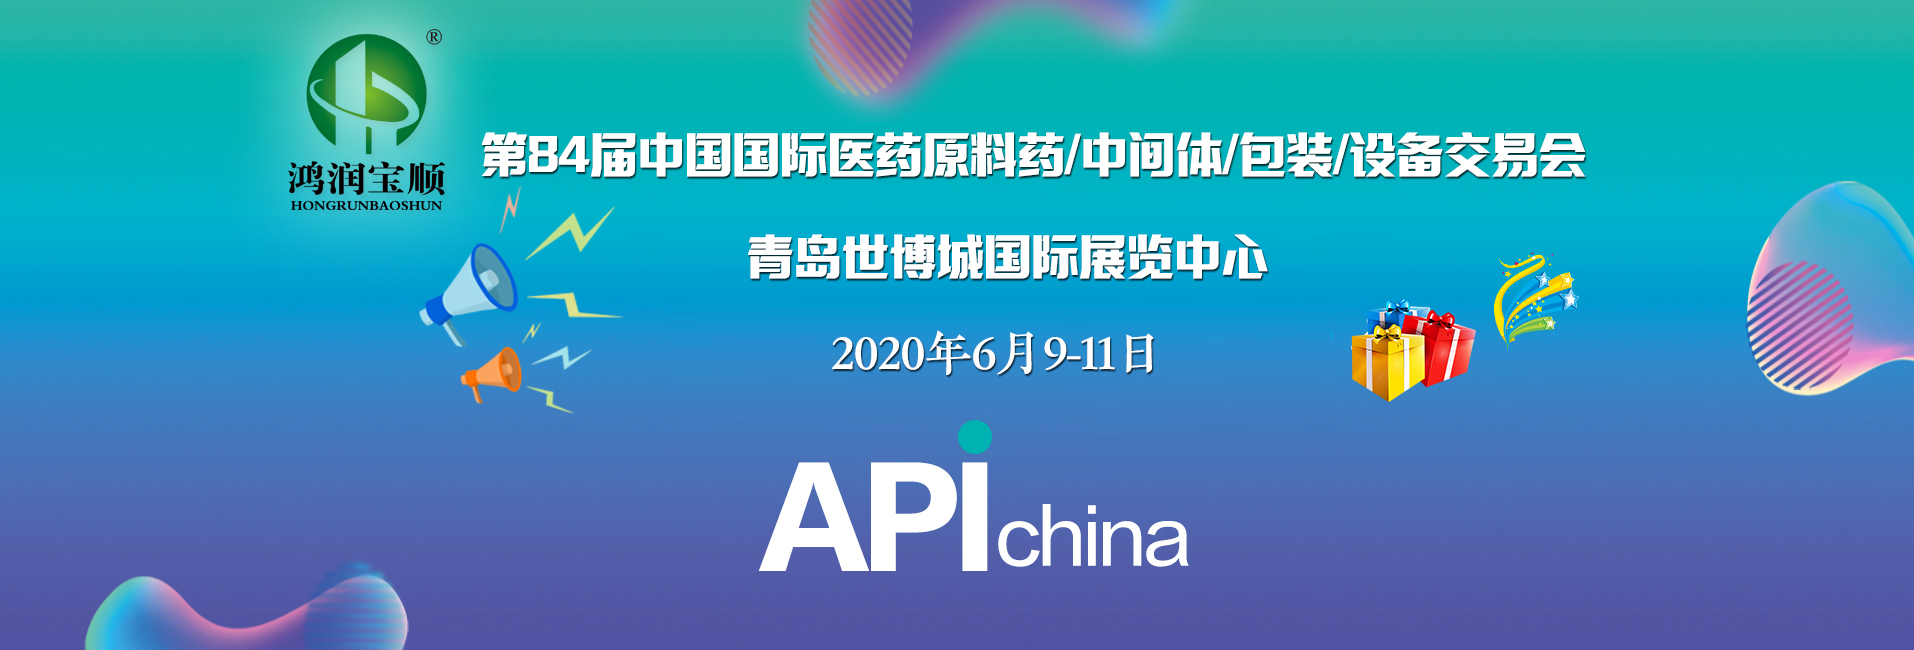 第84届中国国际医药原料药/中间体/包装/设备交易会（API China） 将于2020年6月9-11日在青岛举办